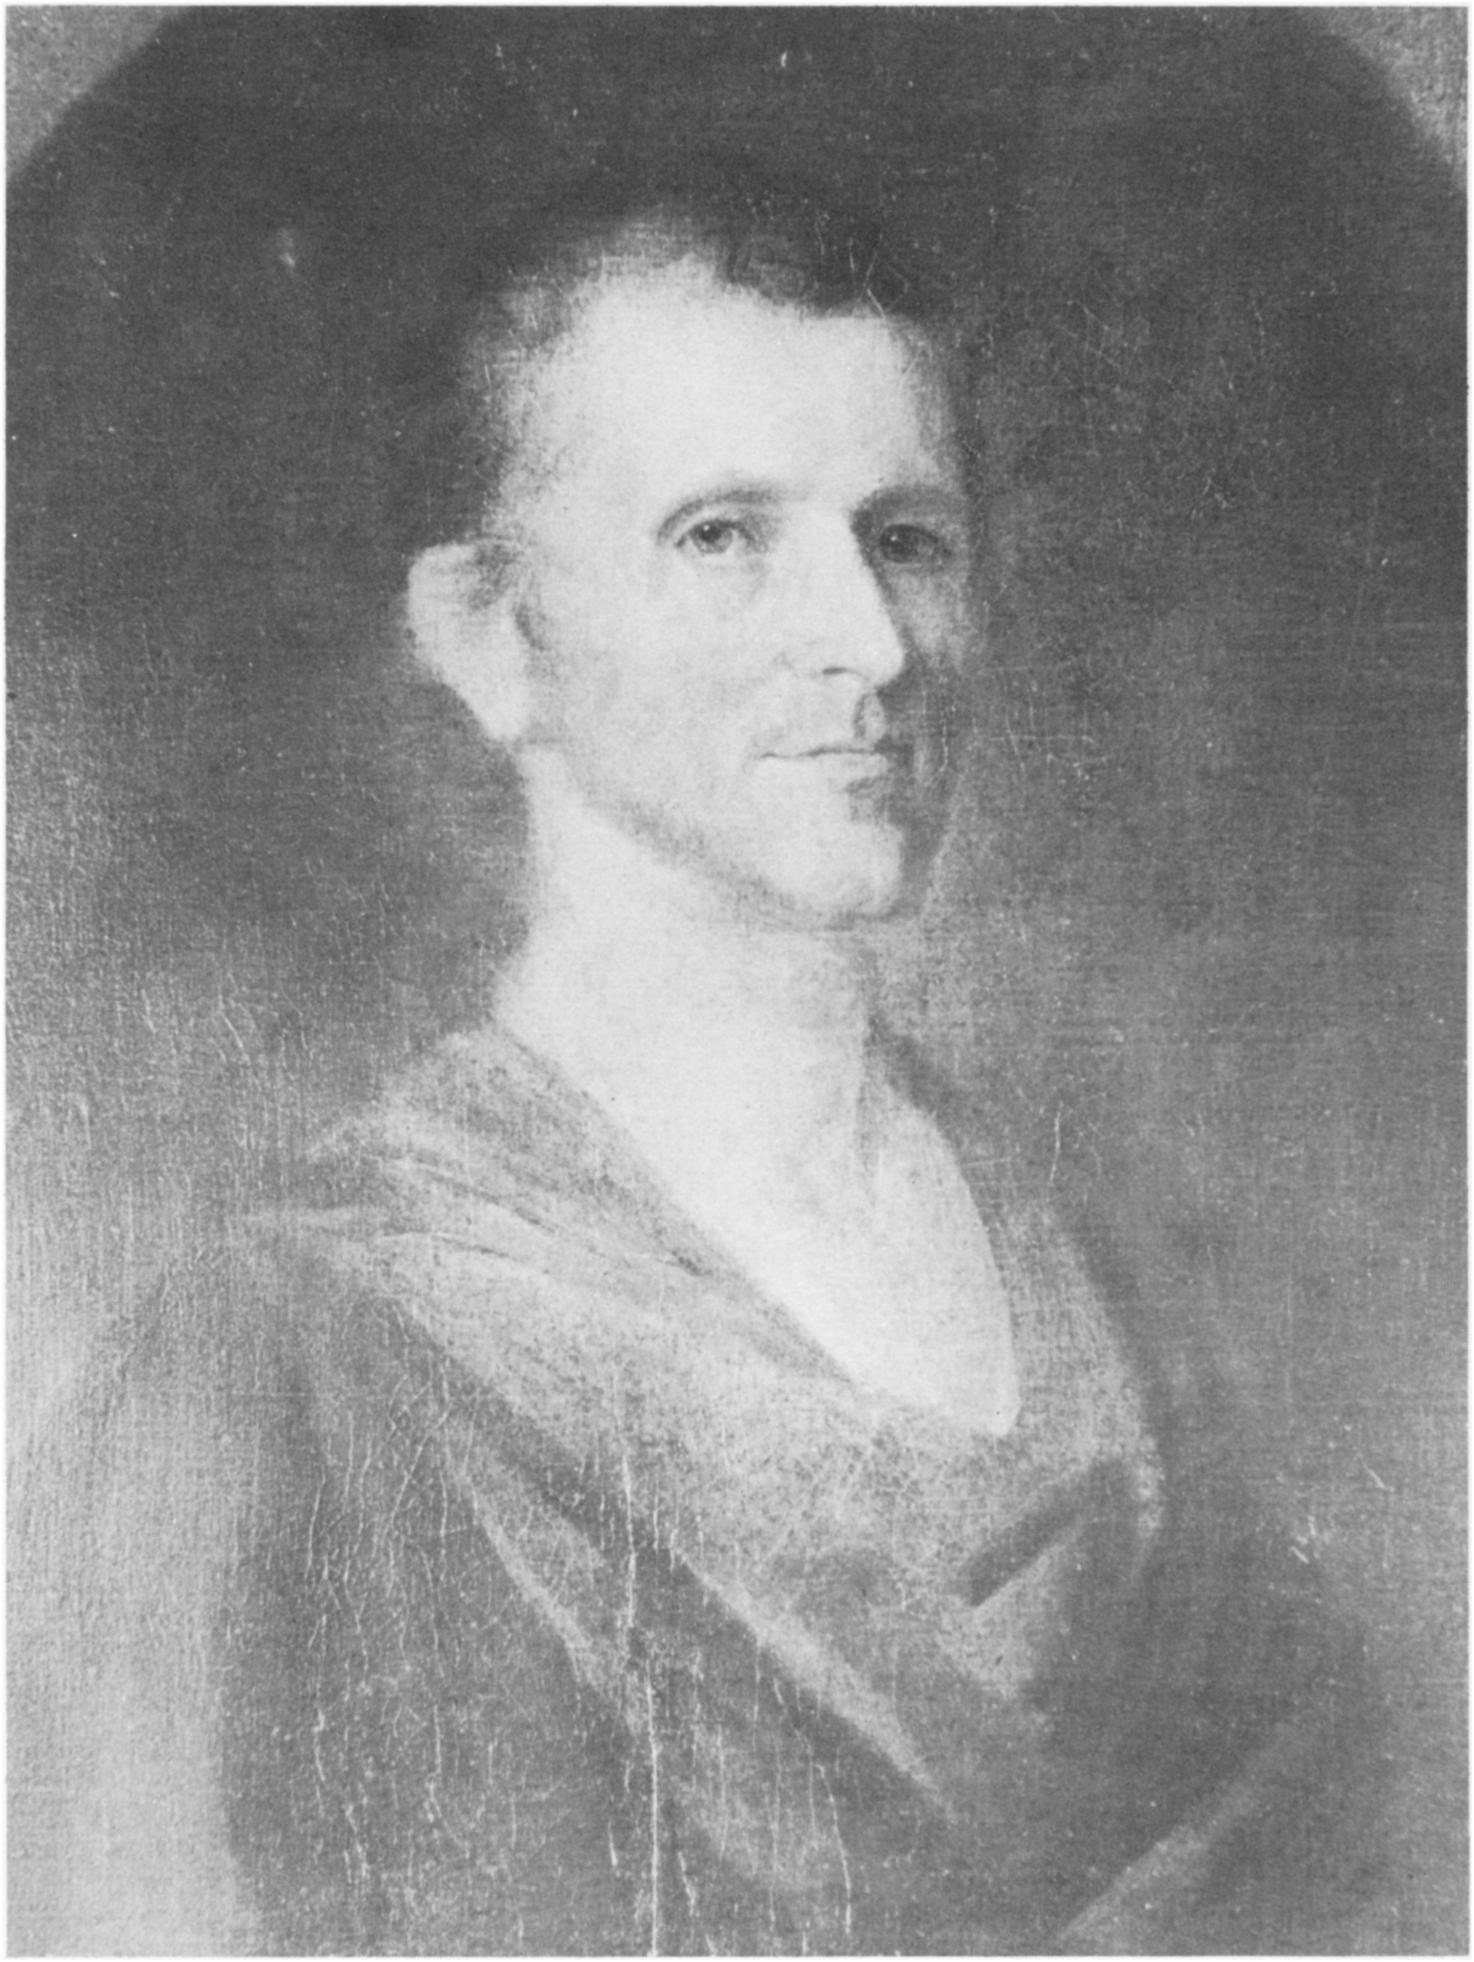 Col William Langborn